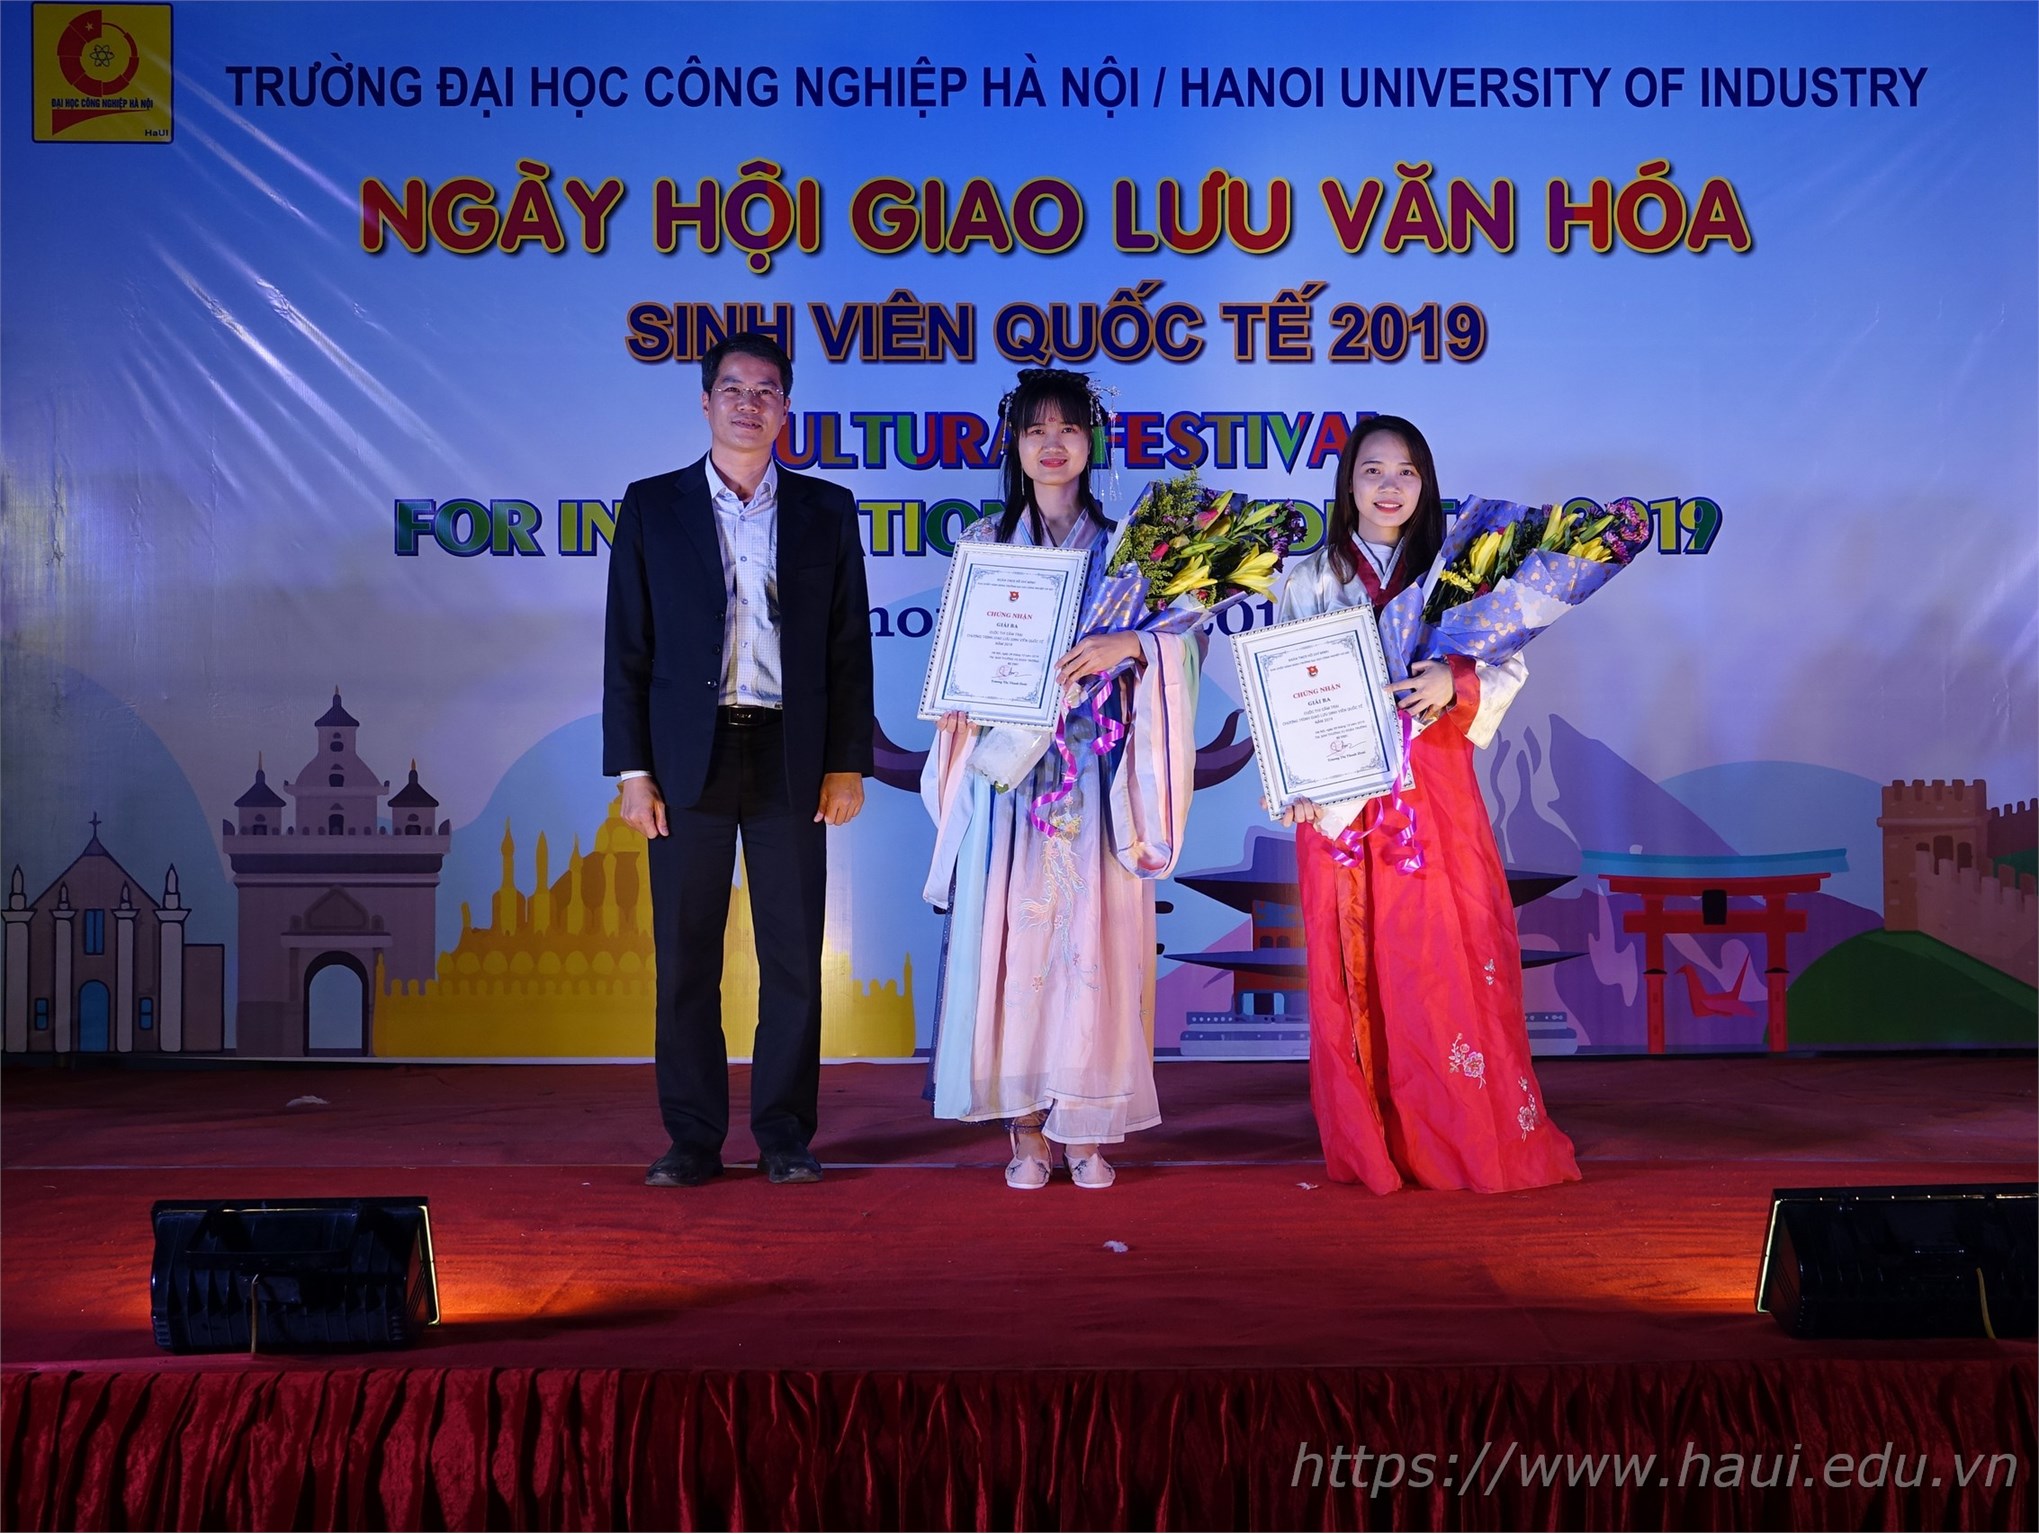 Ấn tượng tại Ngày hội giao lưu văn hóa sinh viên quốc tế 2019 tại Đại học Công nghiệp Hà Nội